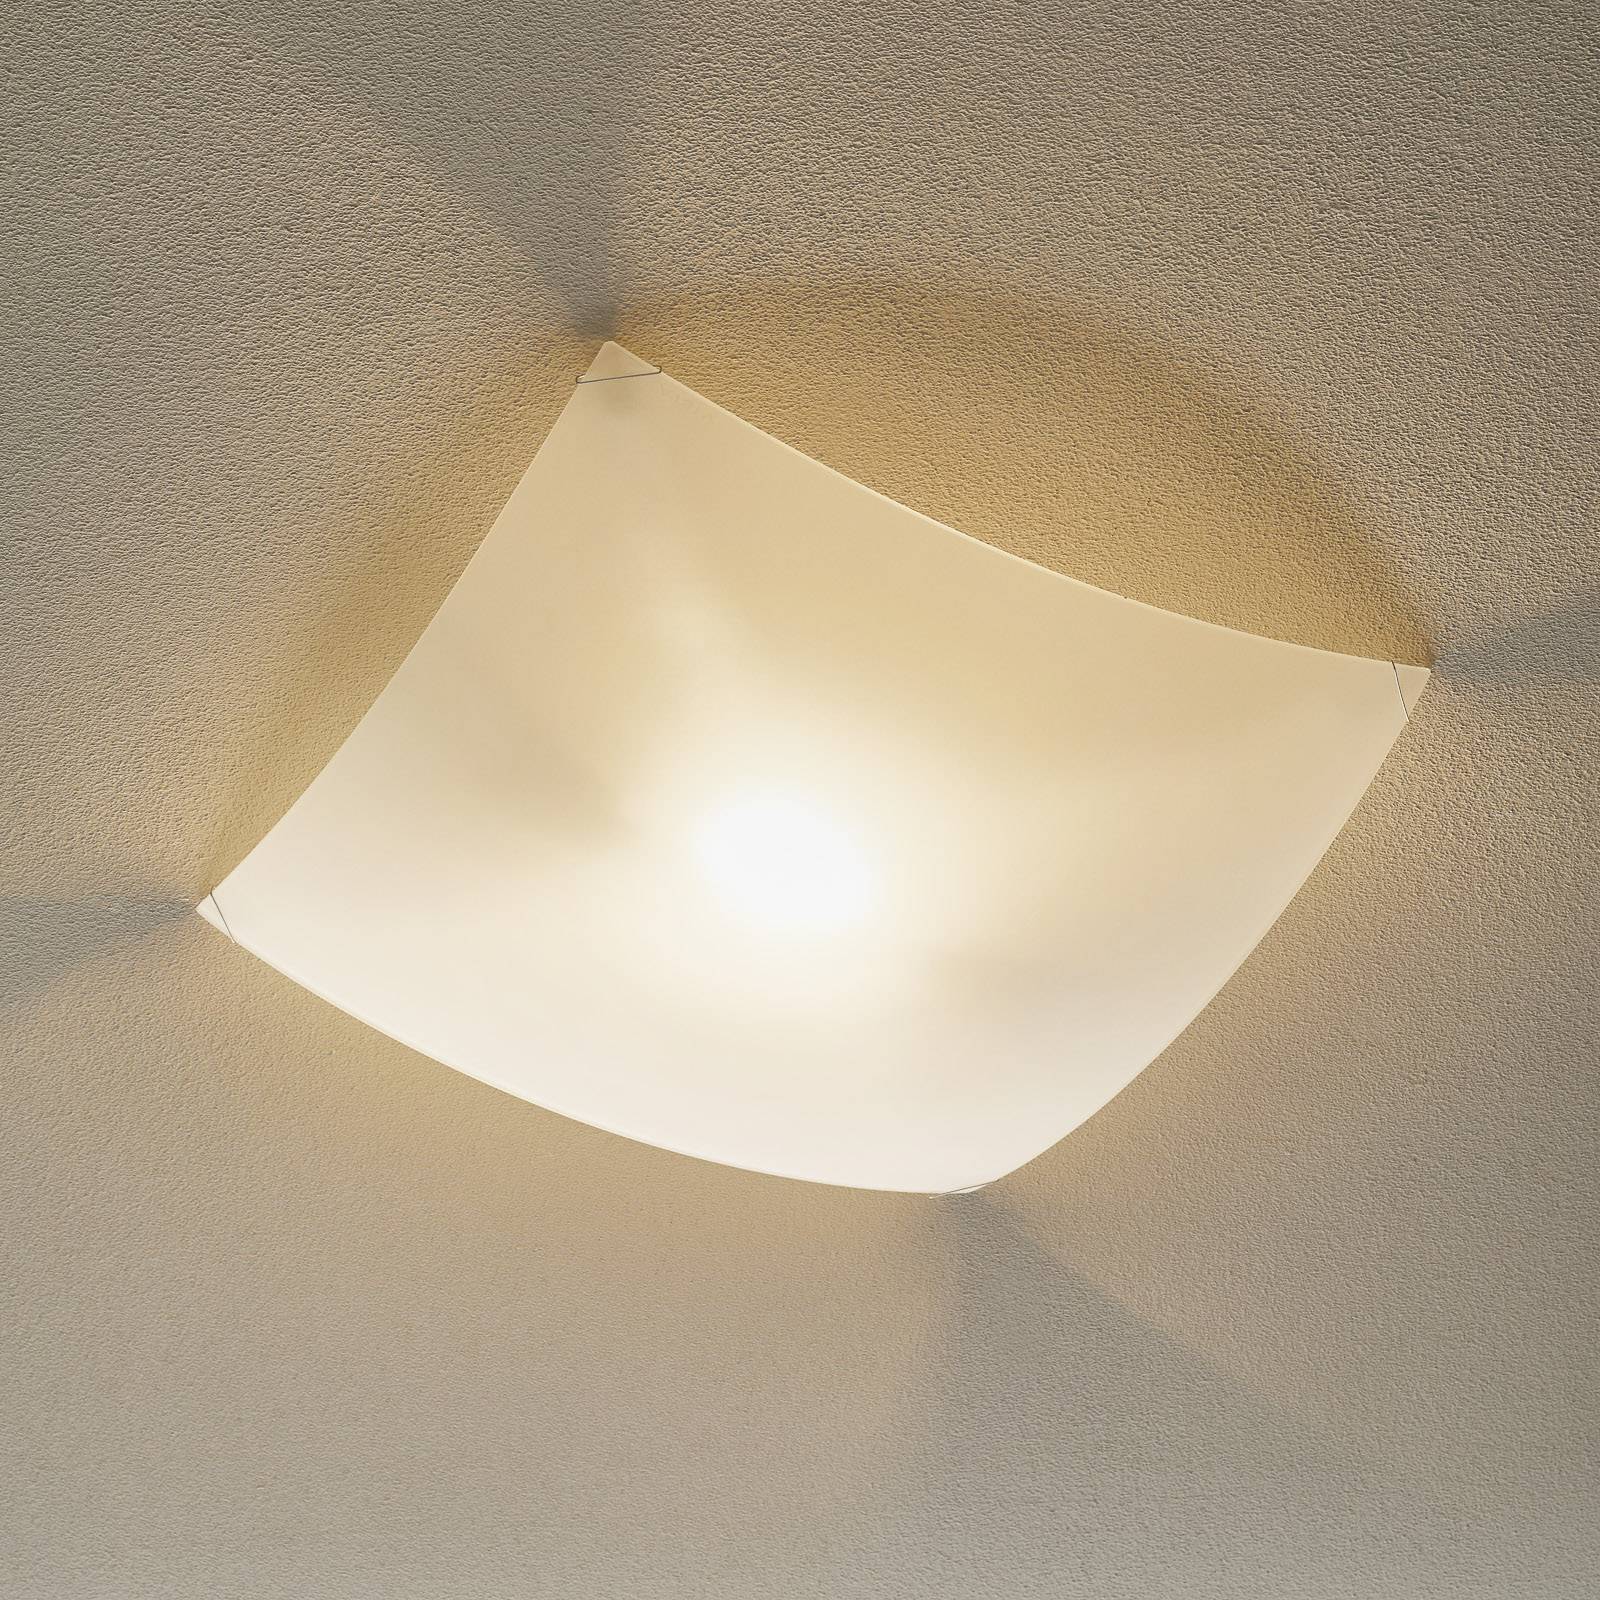 Lampa sufitowa QUADRA ICE, 66 cm